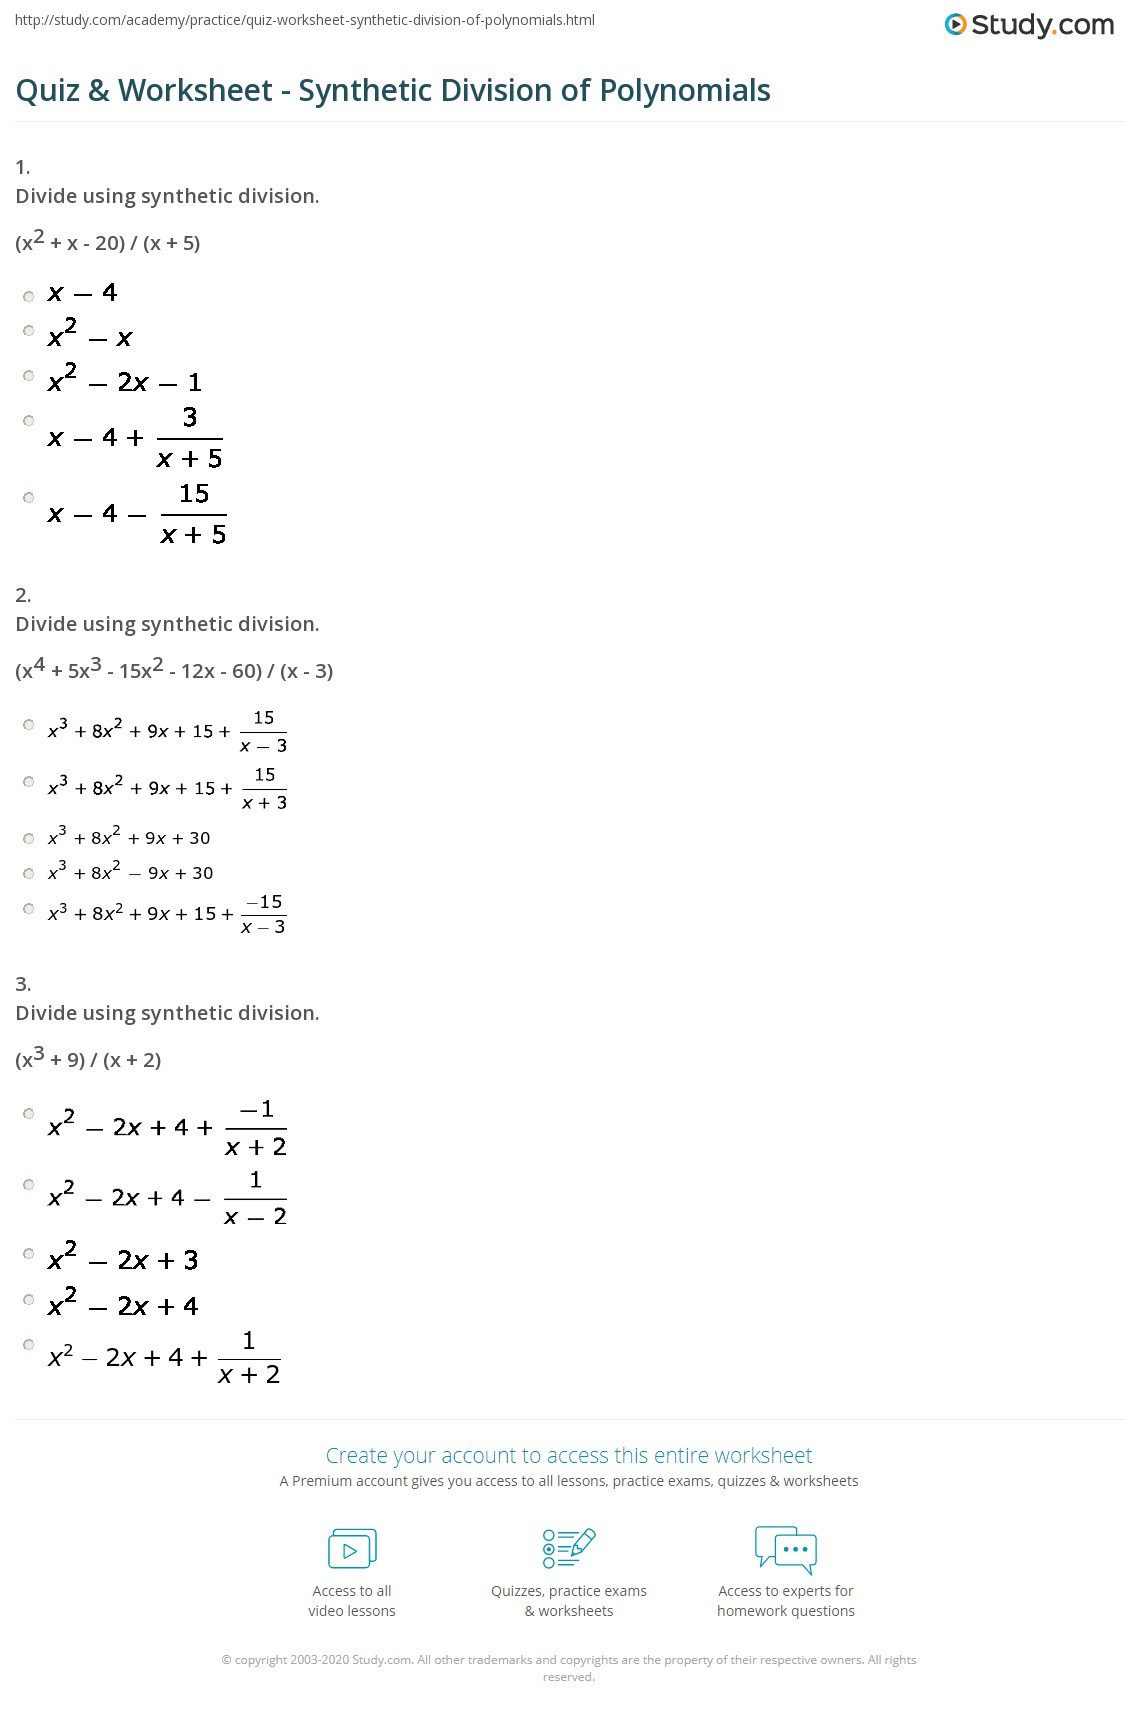 Long Division Polynomials Worksheet Long Division Polynomials Worksheet Kuta software